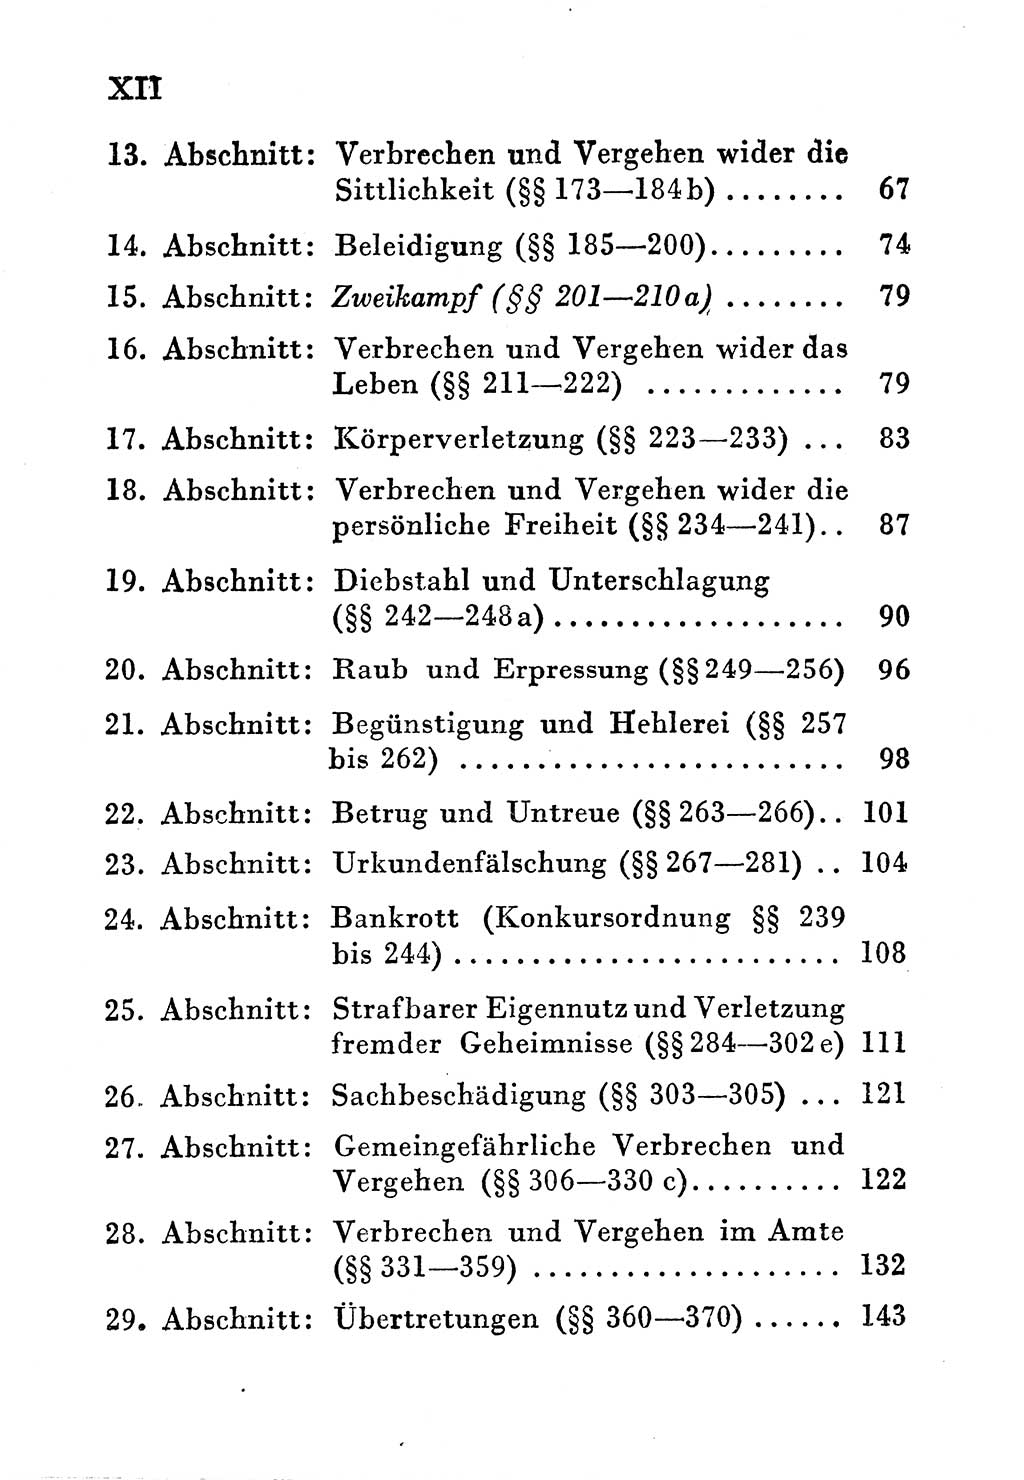 Einleitung Strafgesetzbuch (StGB) und andere Strafgesetze [Deutsche Demokratische Republik (DDR)] 1956, Seite 12 (Einl. StGB Strafges. DDR 1956, S. 12)